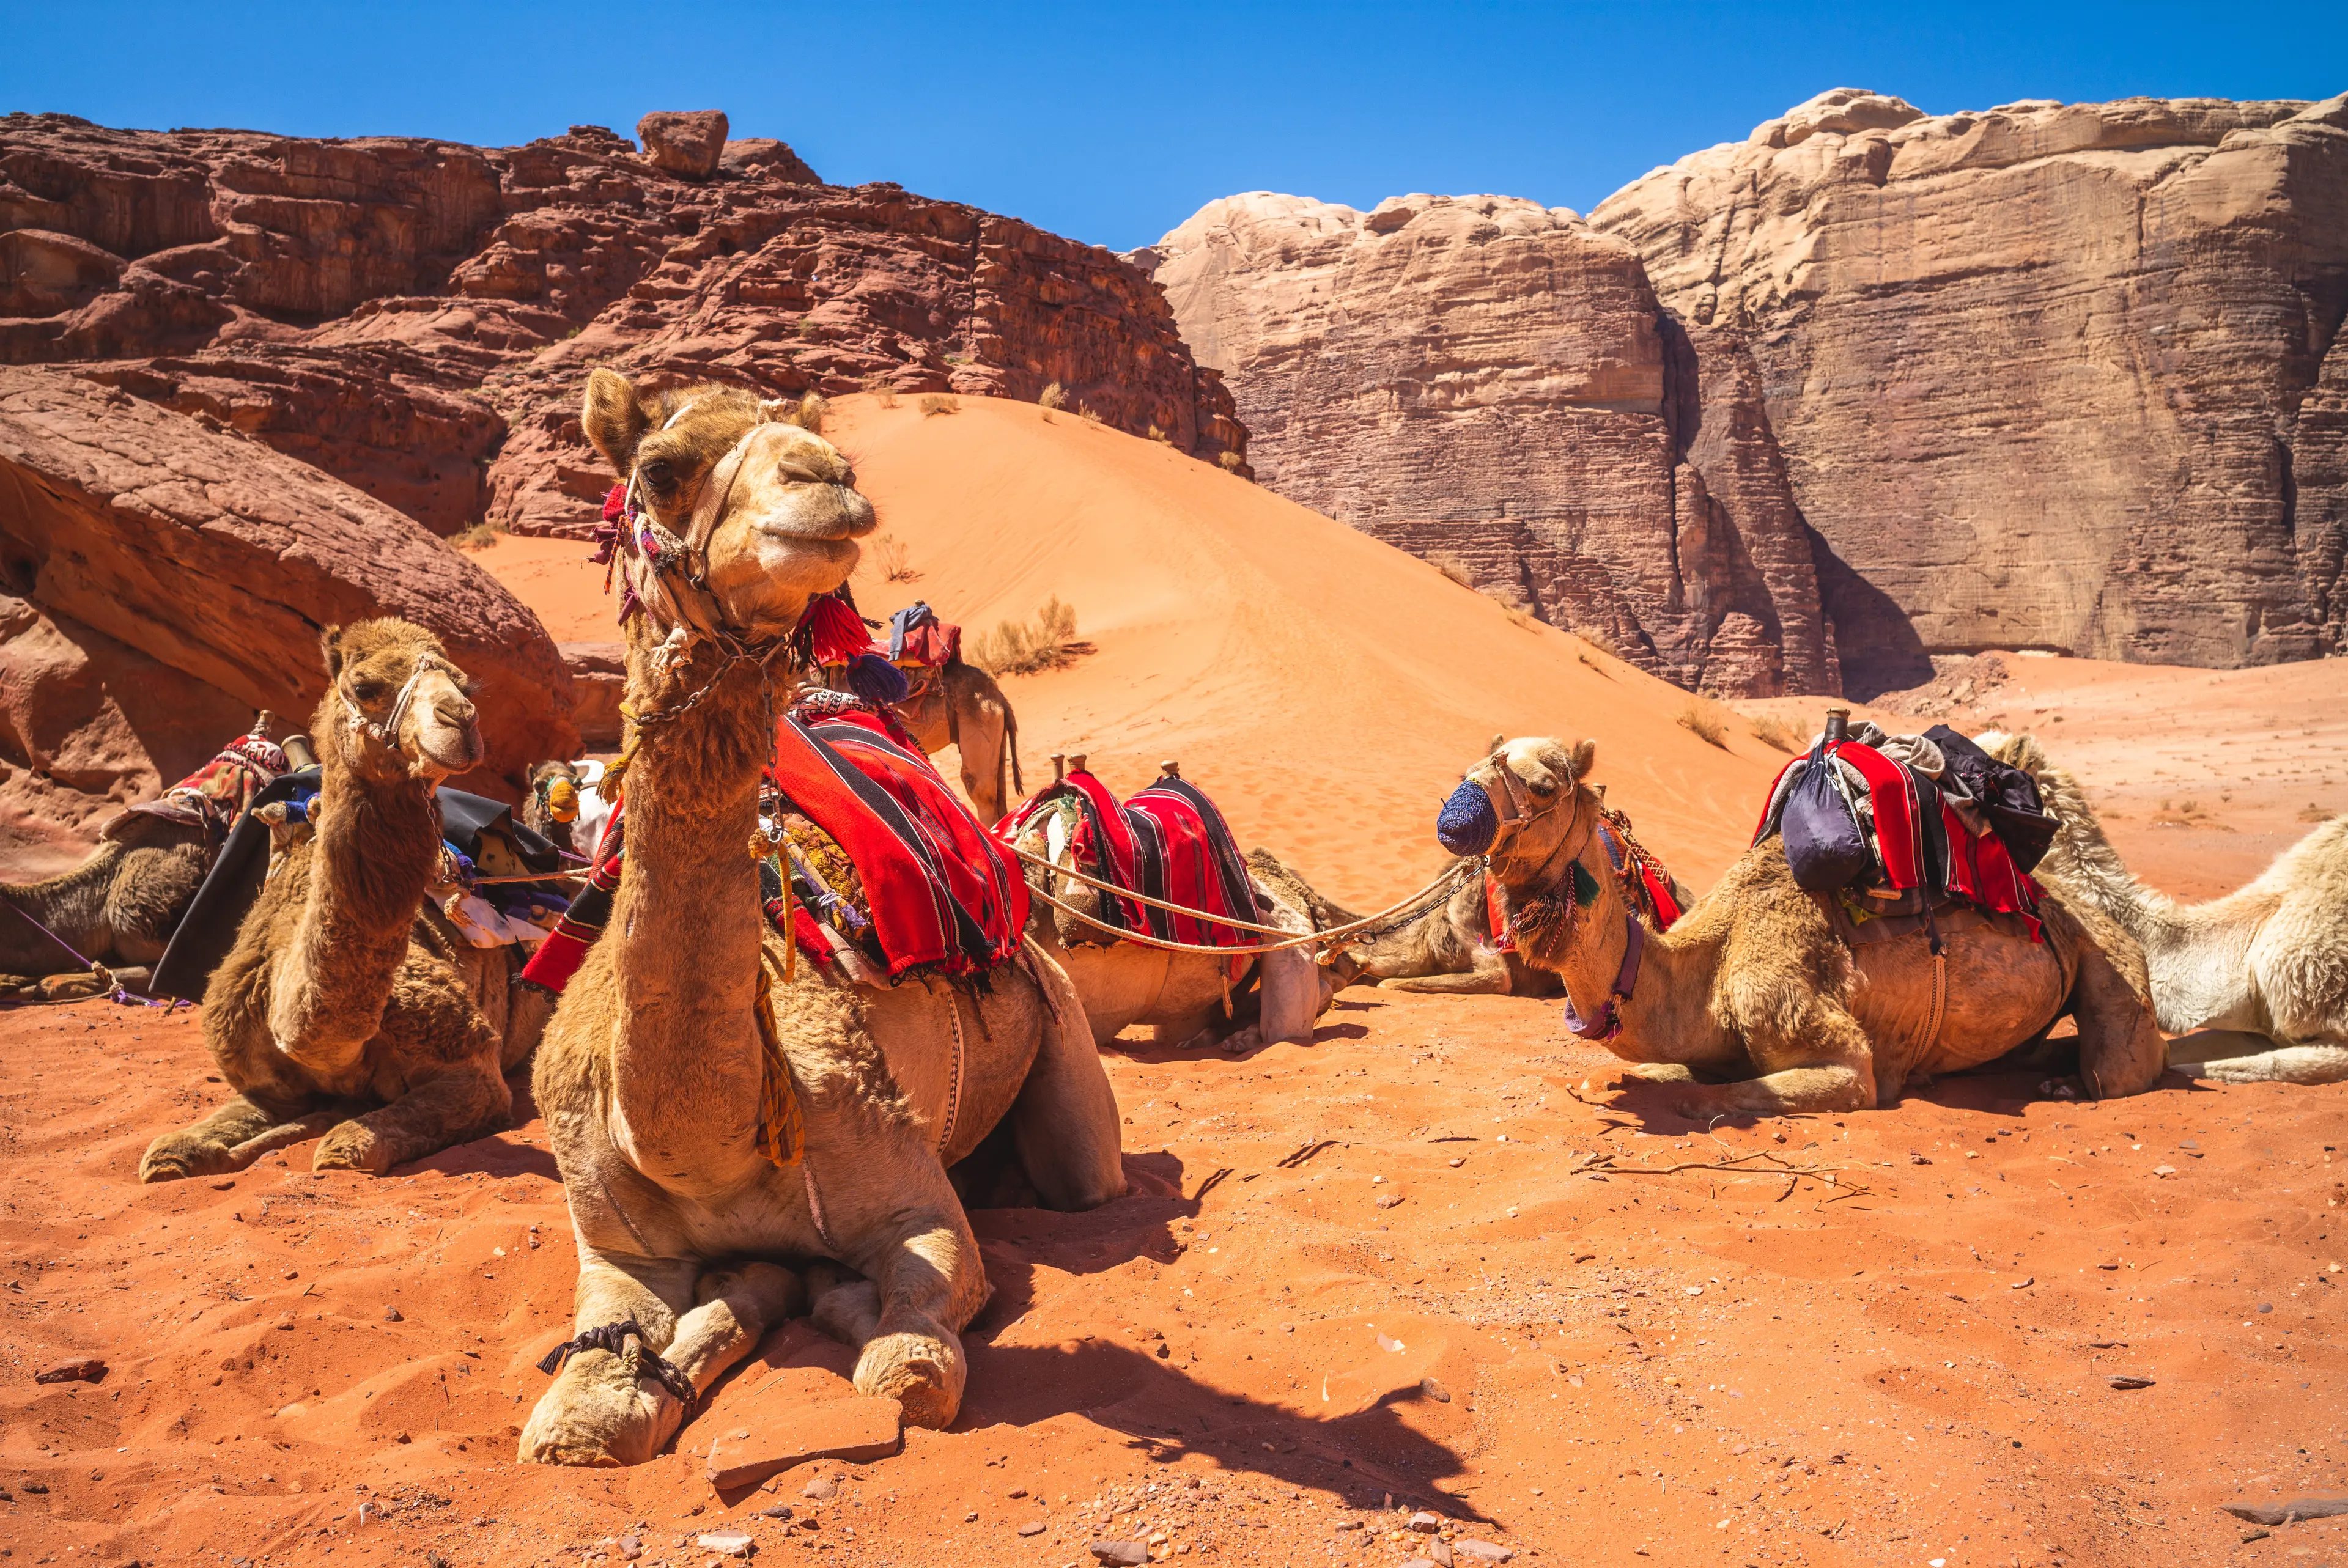 1-Day Outdoor Adventure with Friends in Wadi Rum, Jordan